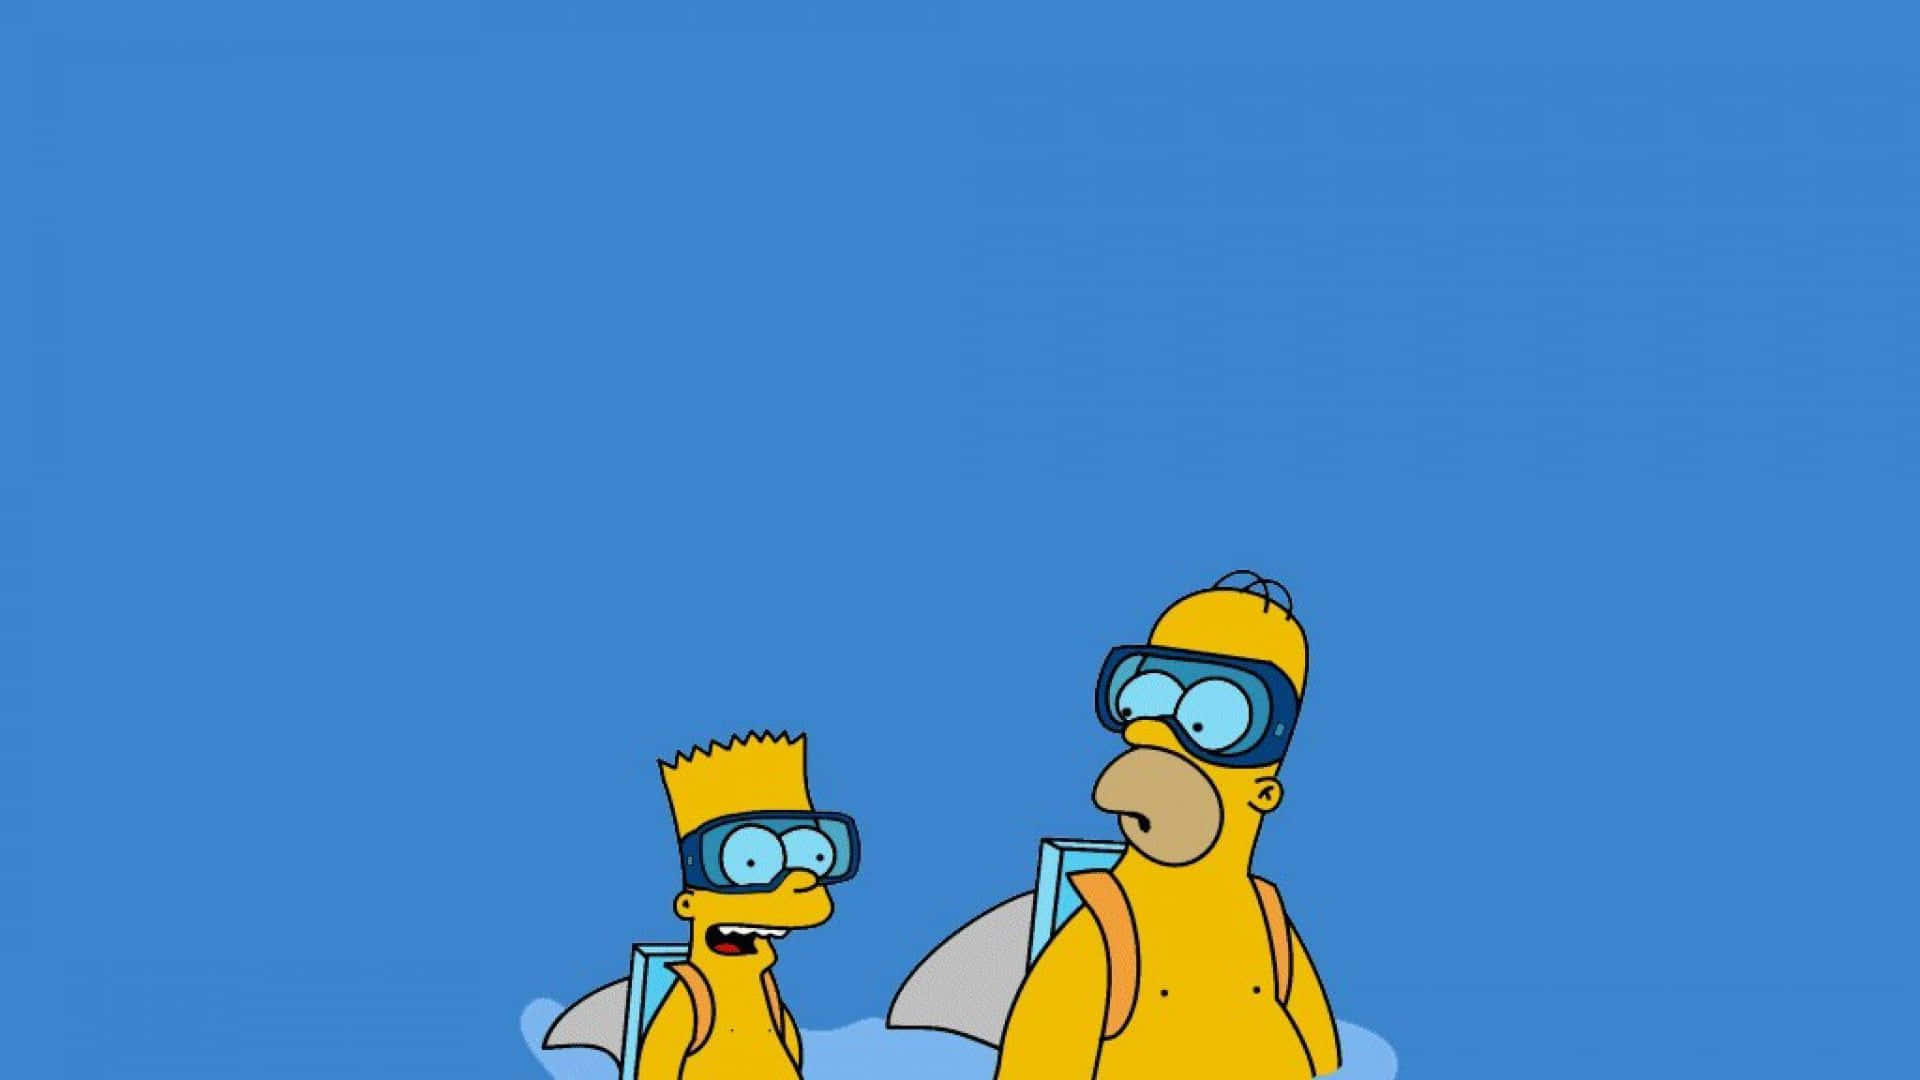 Losfondos De Pantalla De Los Simpsons, Fondos De Pantalla De Los Simpsons, Fondos De Pantalla De Los Simpsons, Fondos De Pantalla De Los Simpsons Fondo de pantalla